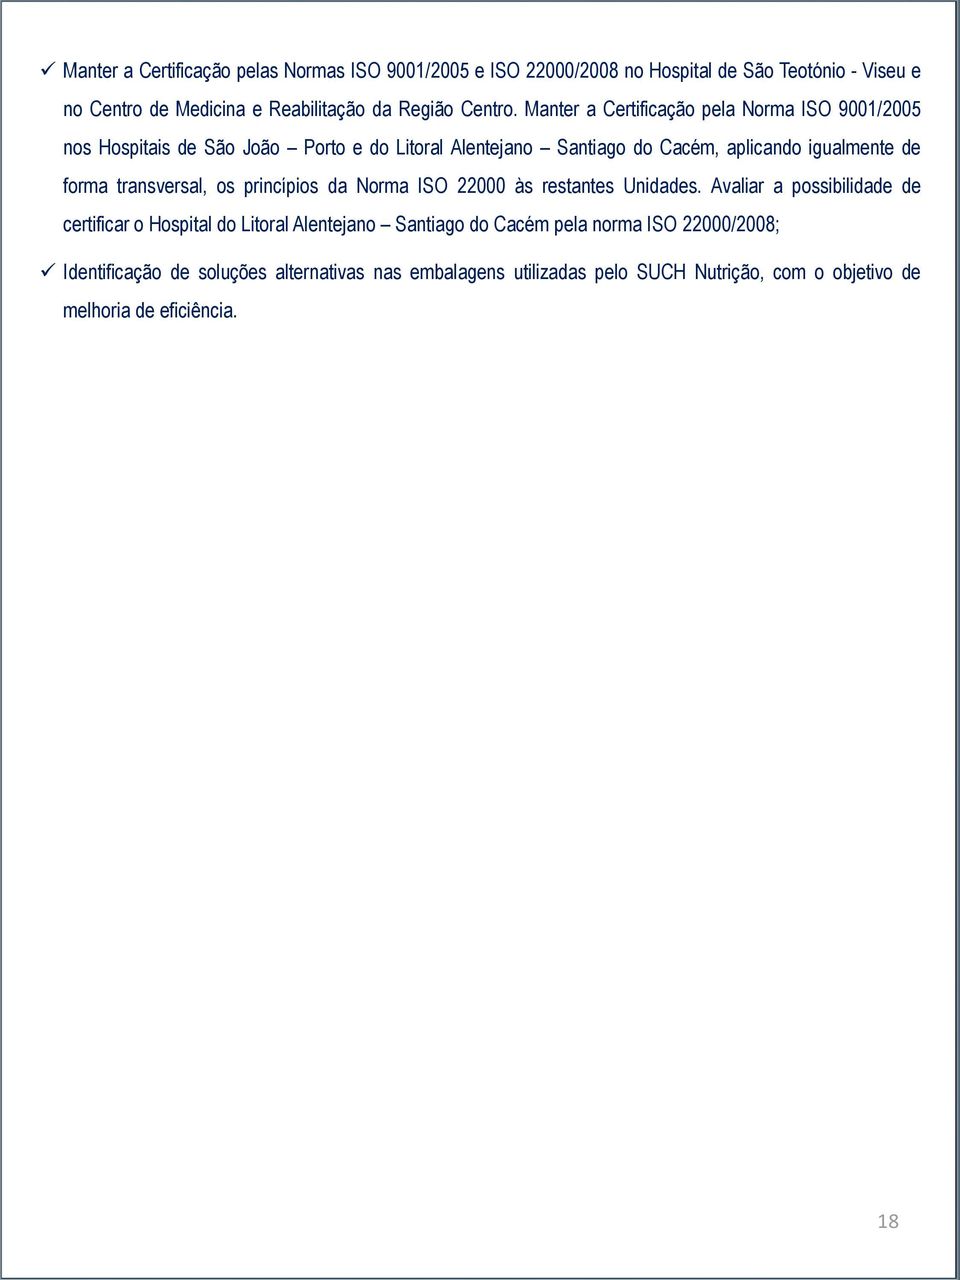 Manter a Certificação pela Norma ISO 9001/2005 nos Hospitais de São João Porto e do Litoral Alentejano Santiago do Cacém, aplicando igualmente de forma